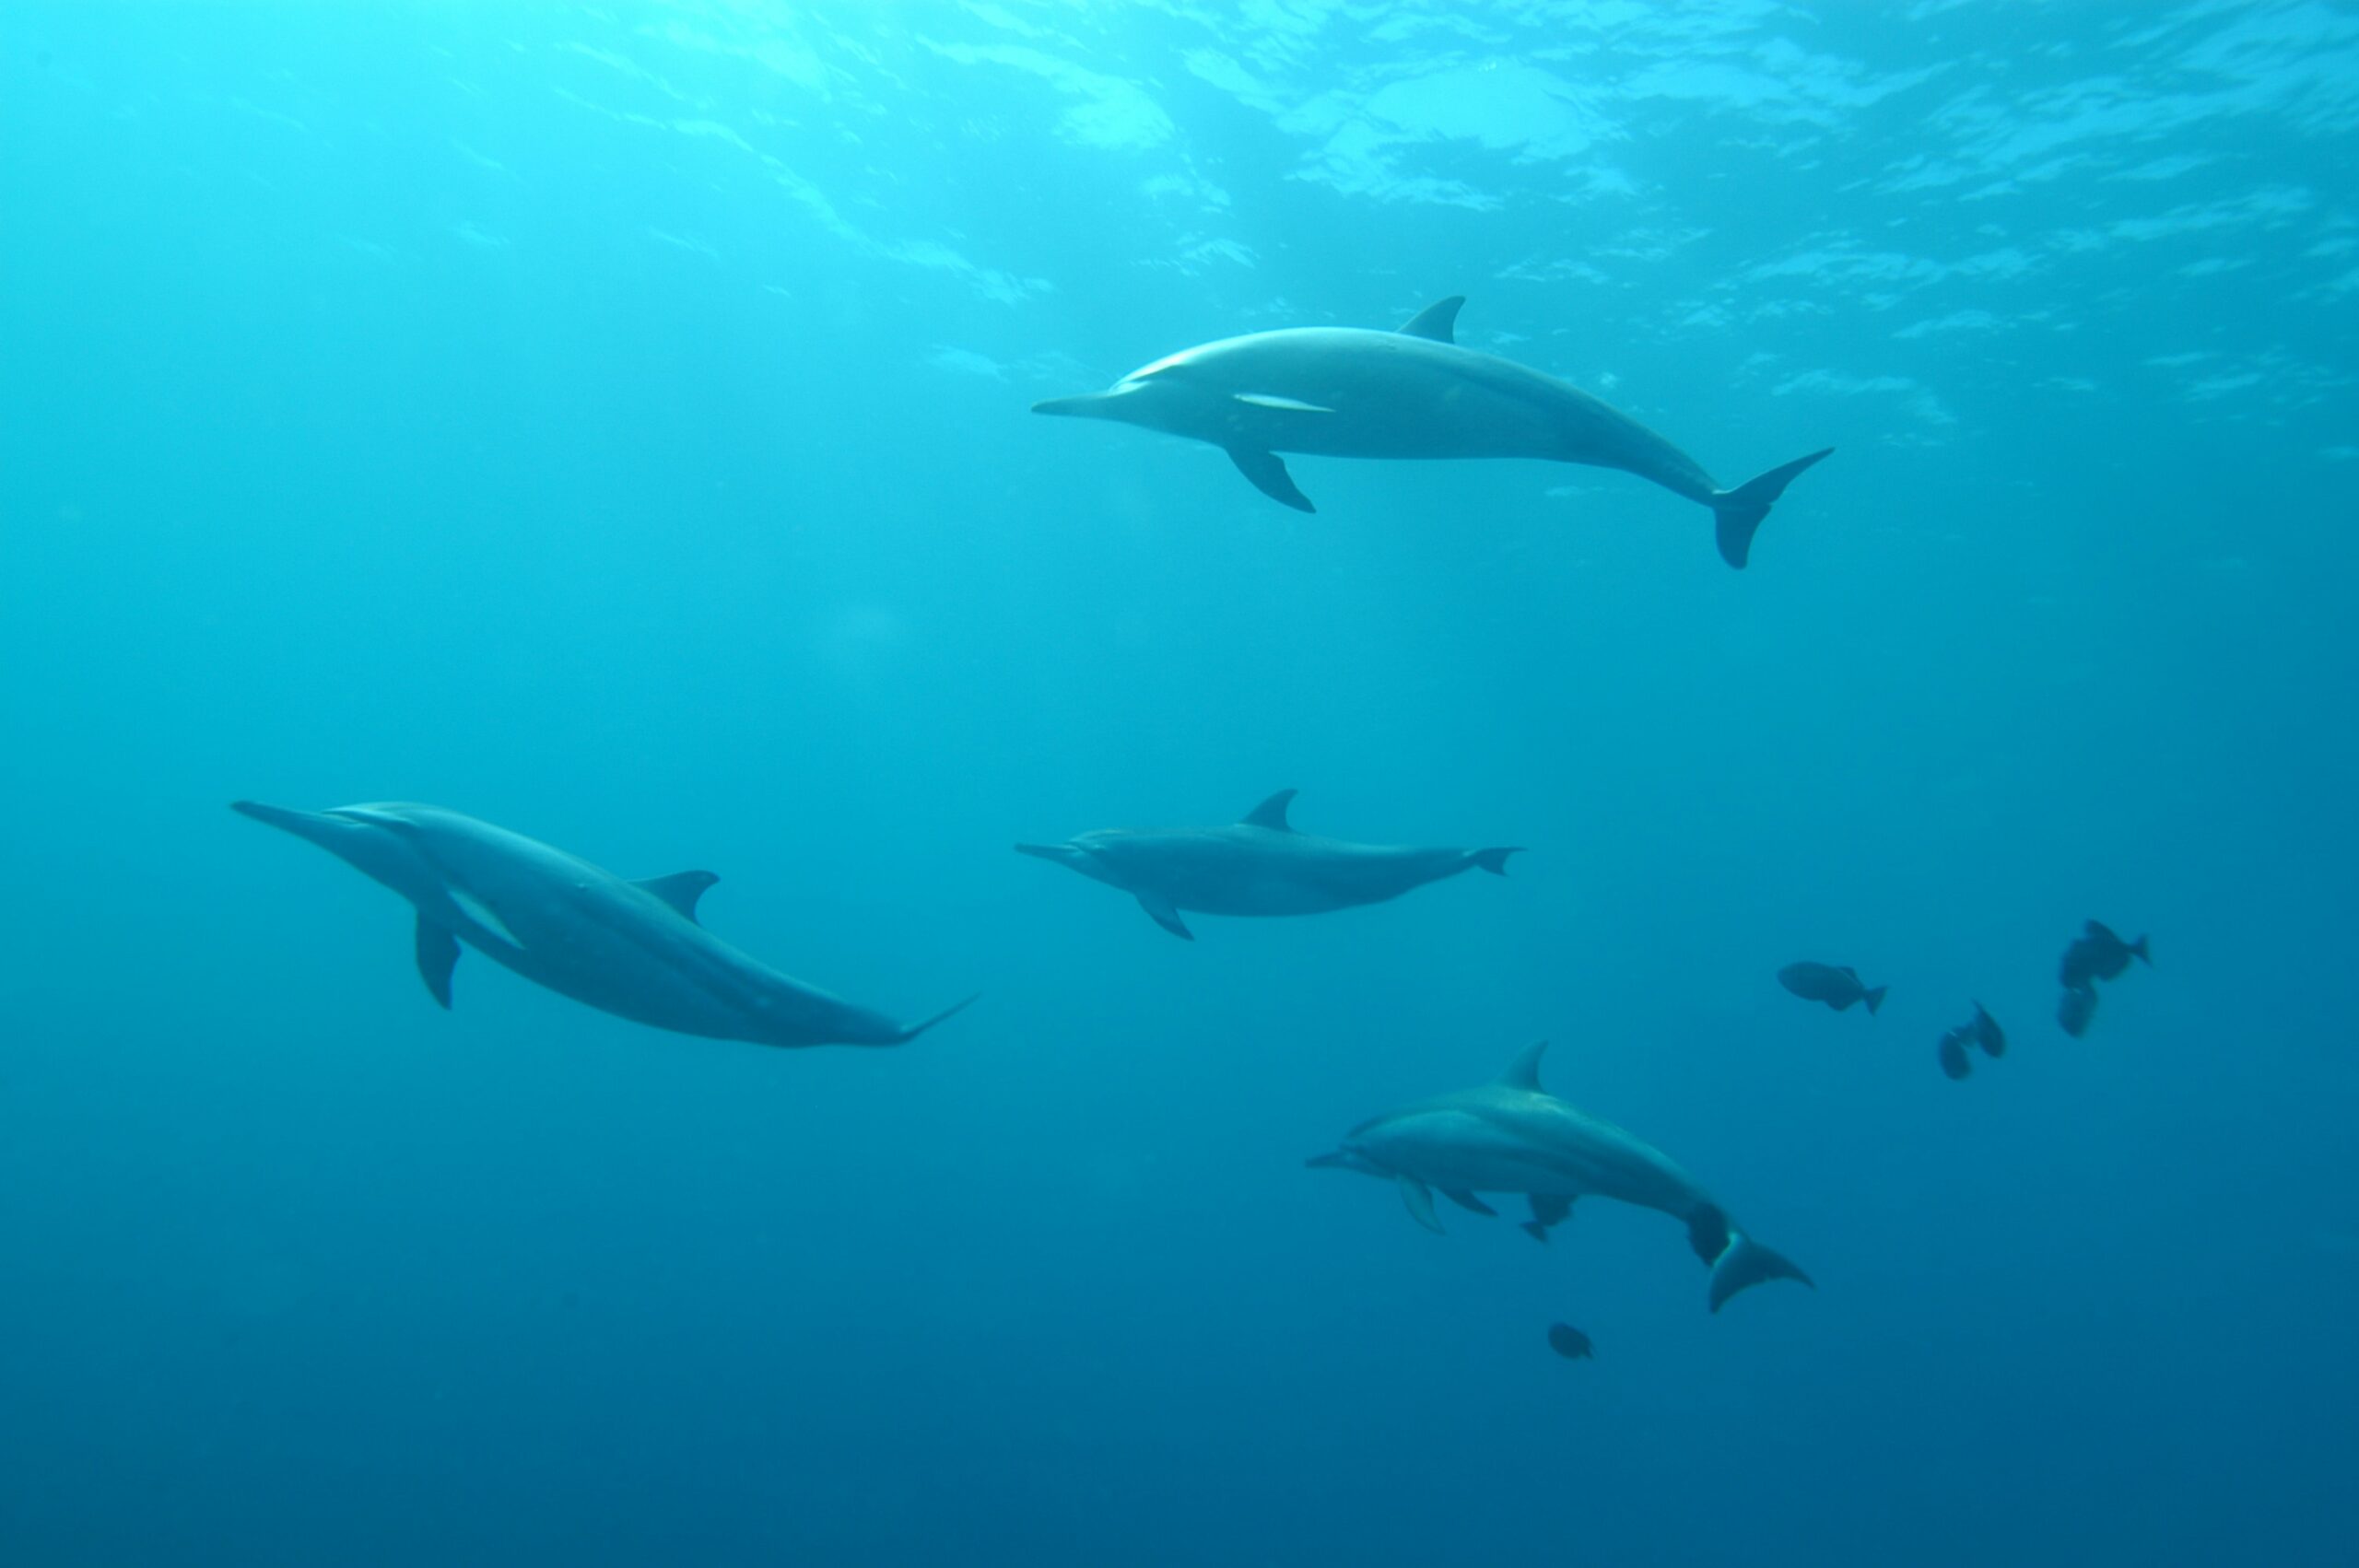 imagem submarina mostra 4 golfinhos e alguns peixes